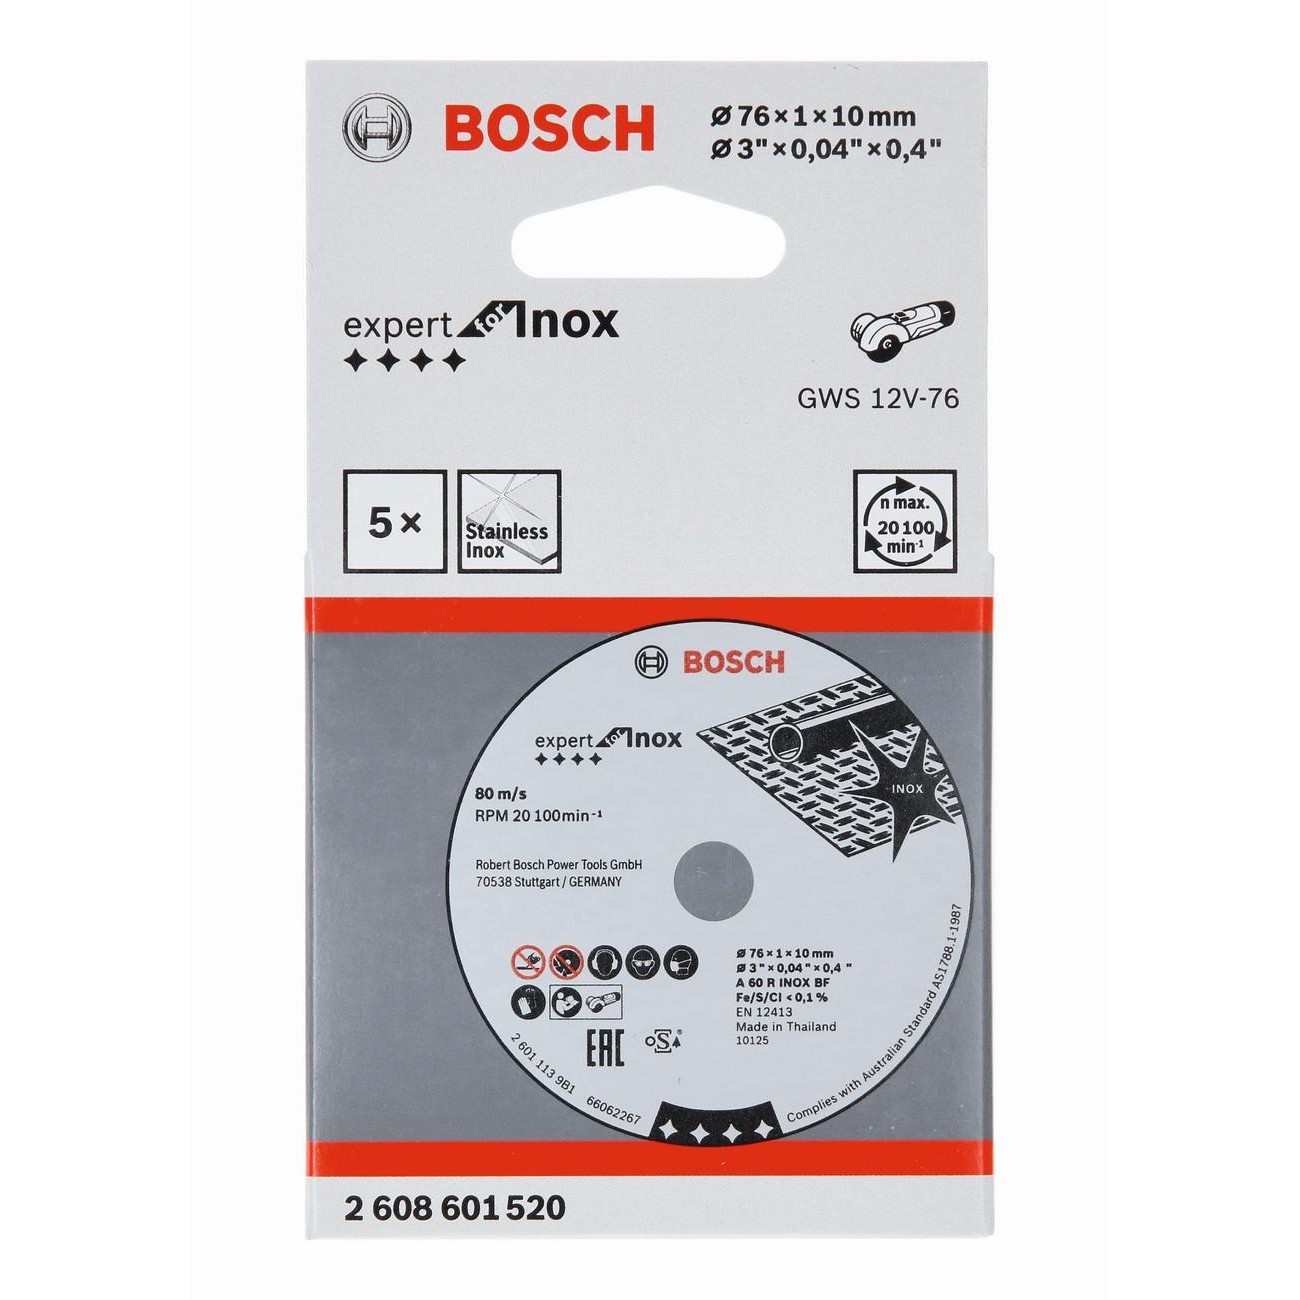 BOSCH Professional A 60 R INOX BF Комплект отрезни дискове за инокс 5 бр 76 мм 1 мм 10 мм (2608601520)